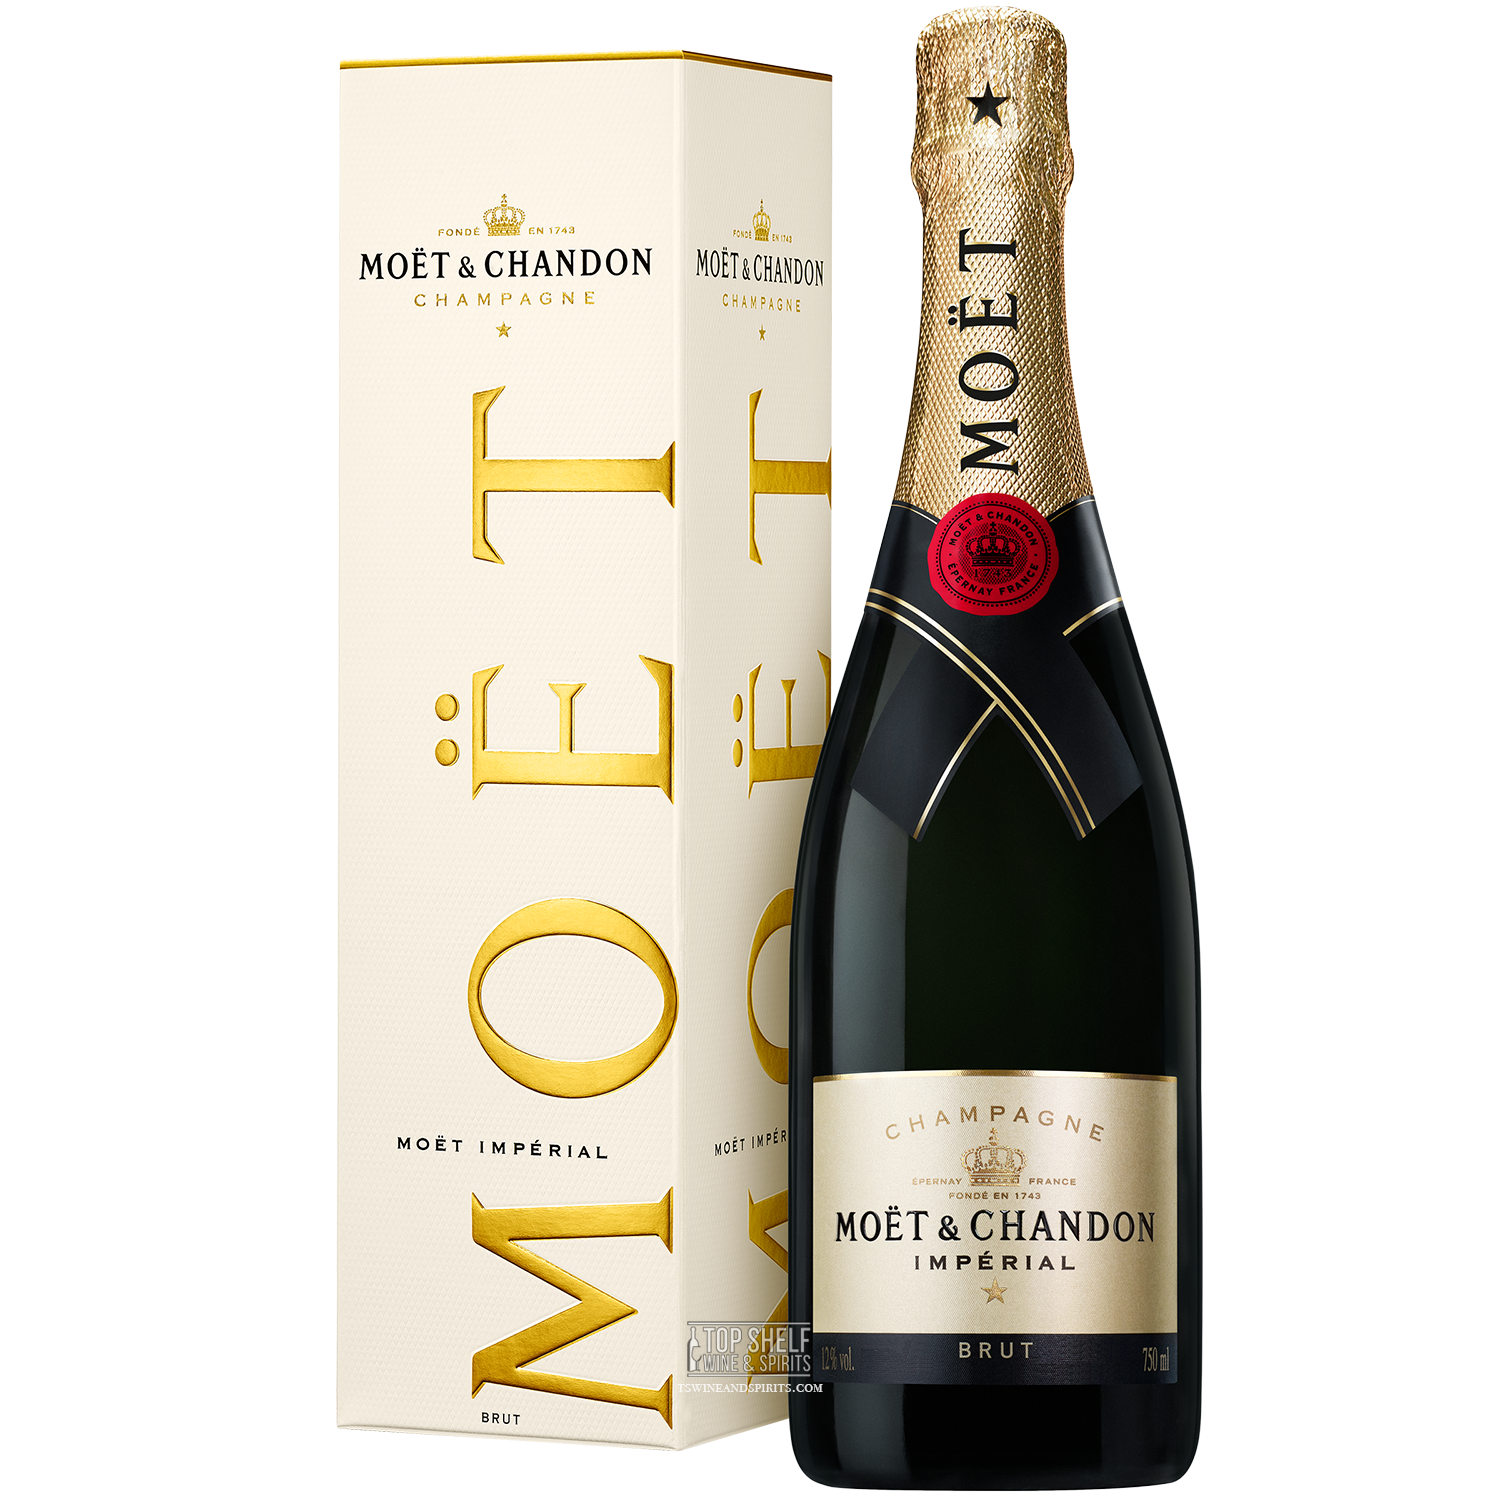 Moet & Chandon Brut Imperial Gold Bottle Edition, Champagne, France